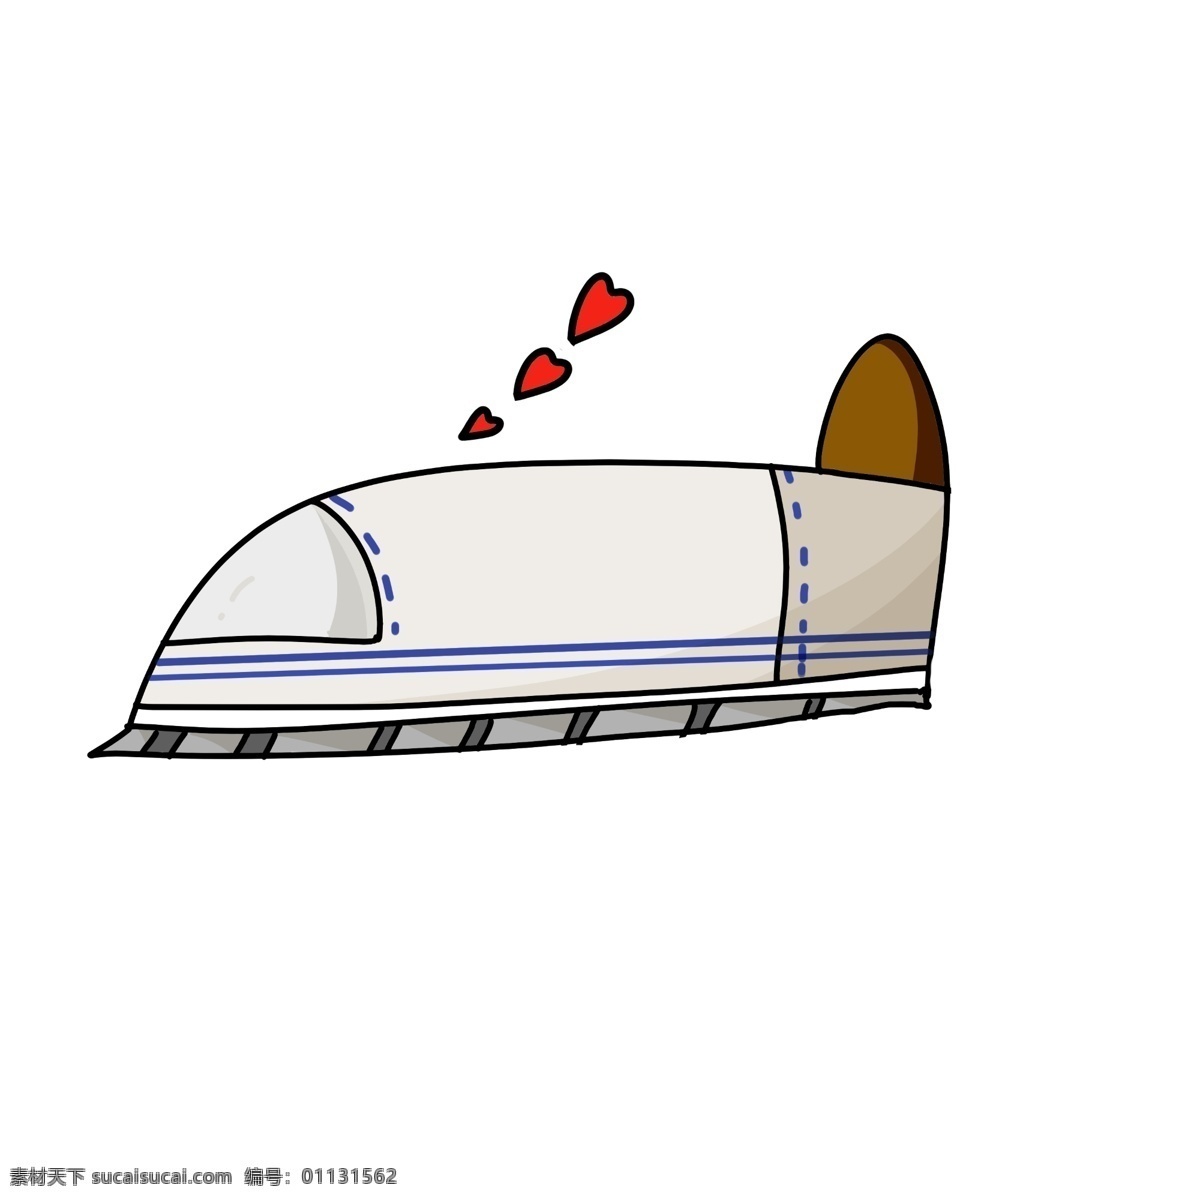 春运 高铁 手绘 插画 手绘高铁 卡通高铁 爱心高铁 红色的桃心 交通工具 白色的高铁 漂亮的高铁